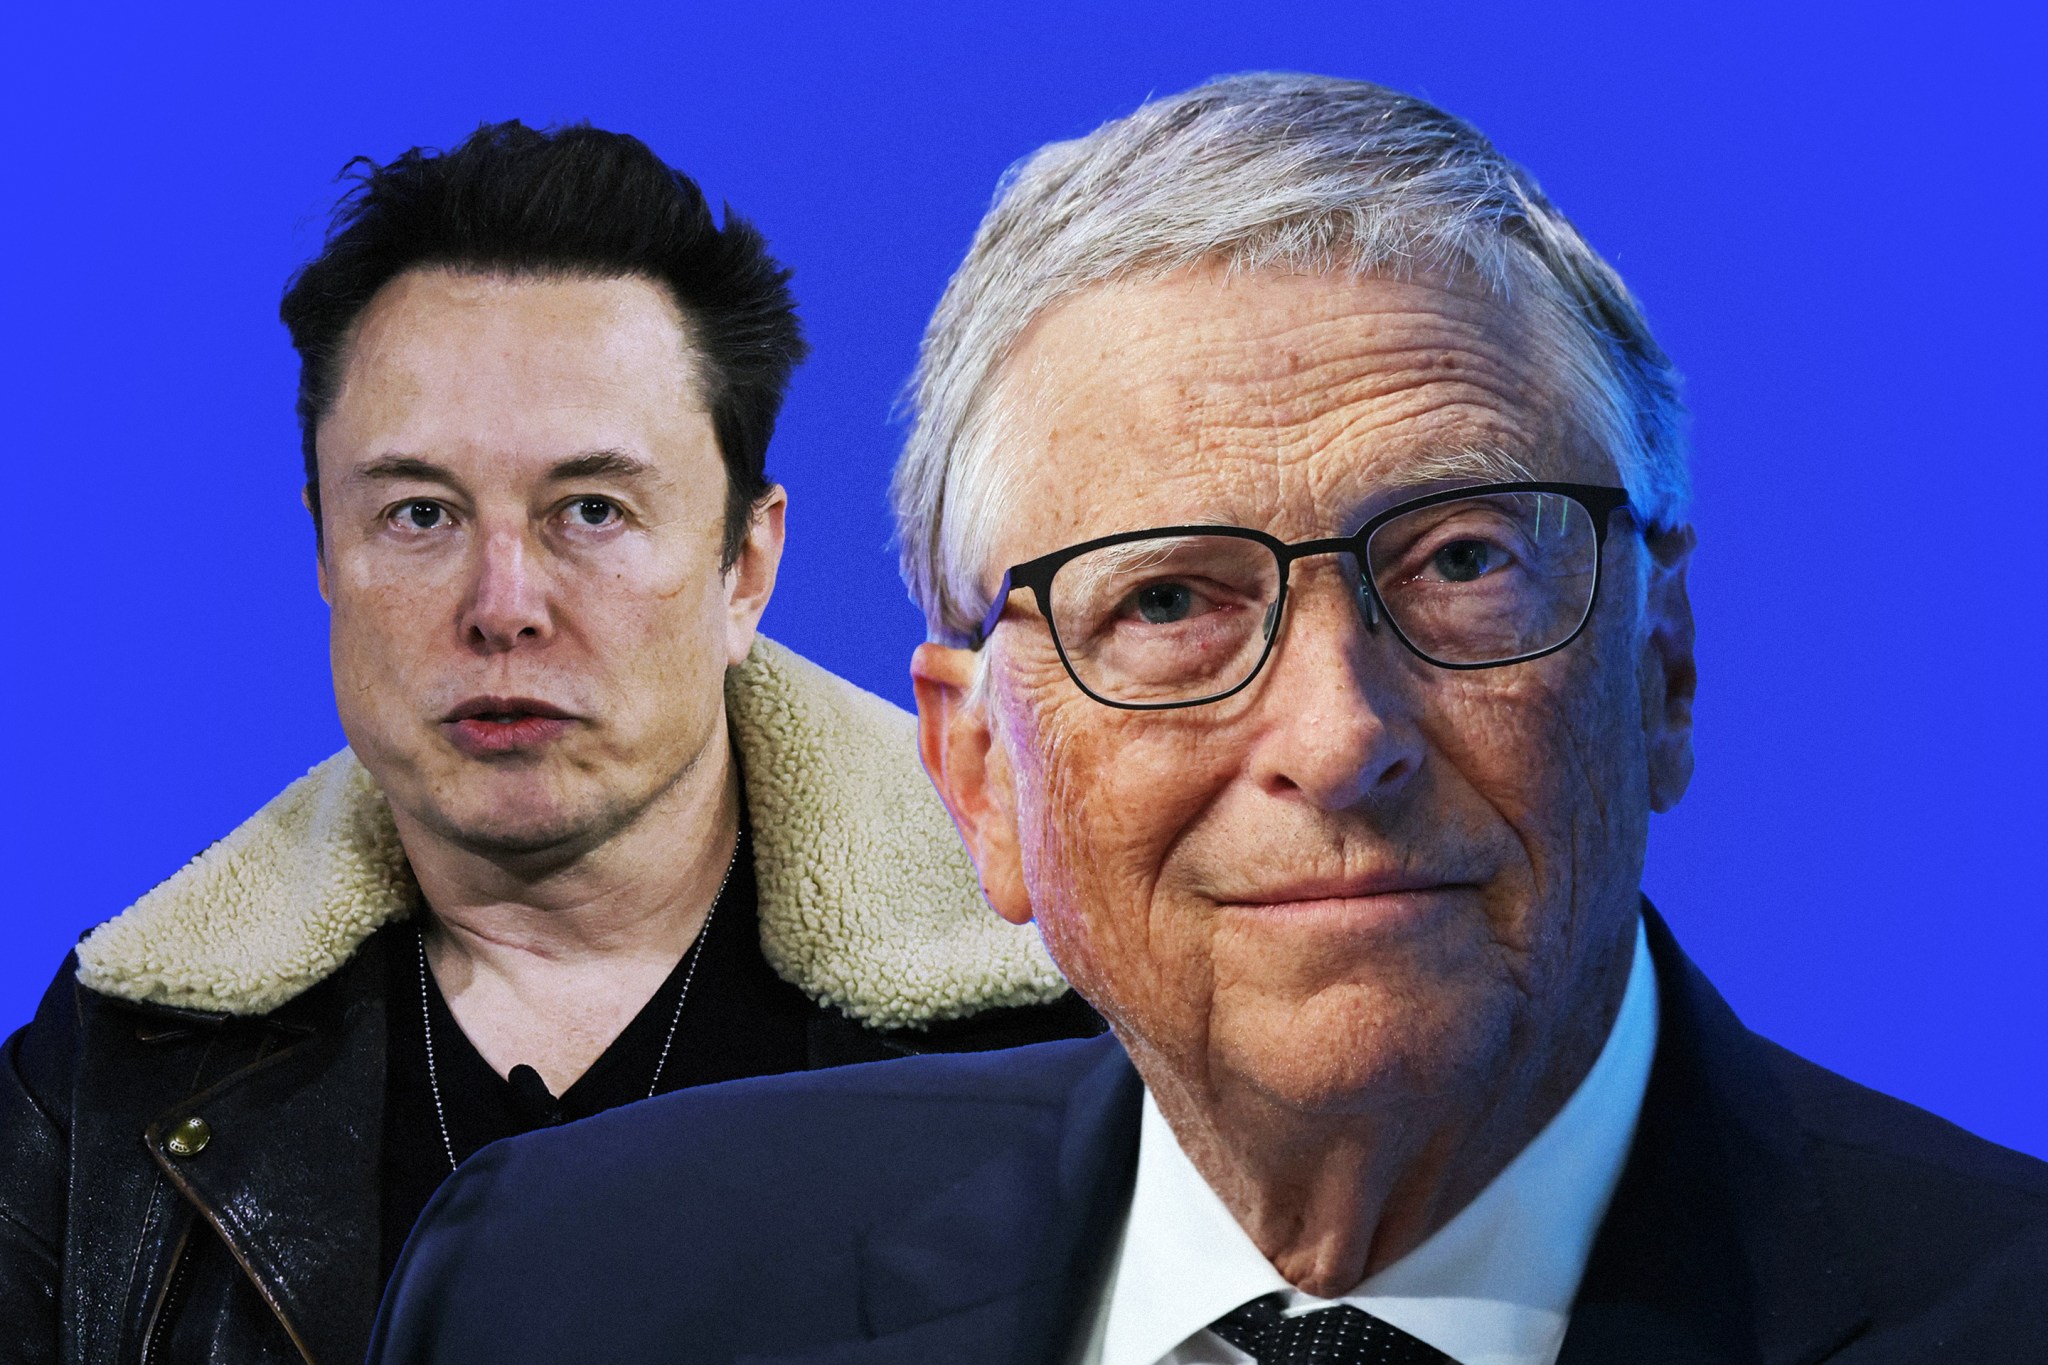 Bill Gates thinks he’s a better boss than Elon Musk’s ‘hardcore’ approach.